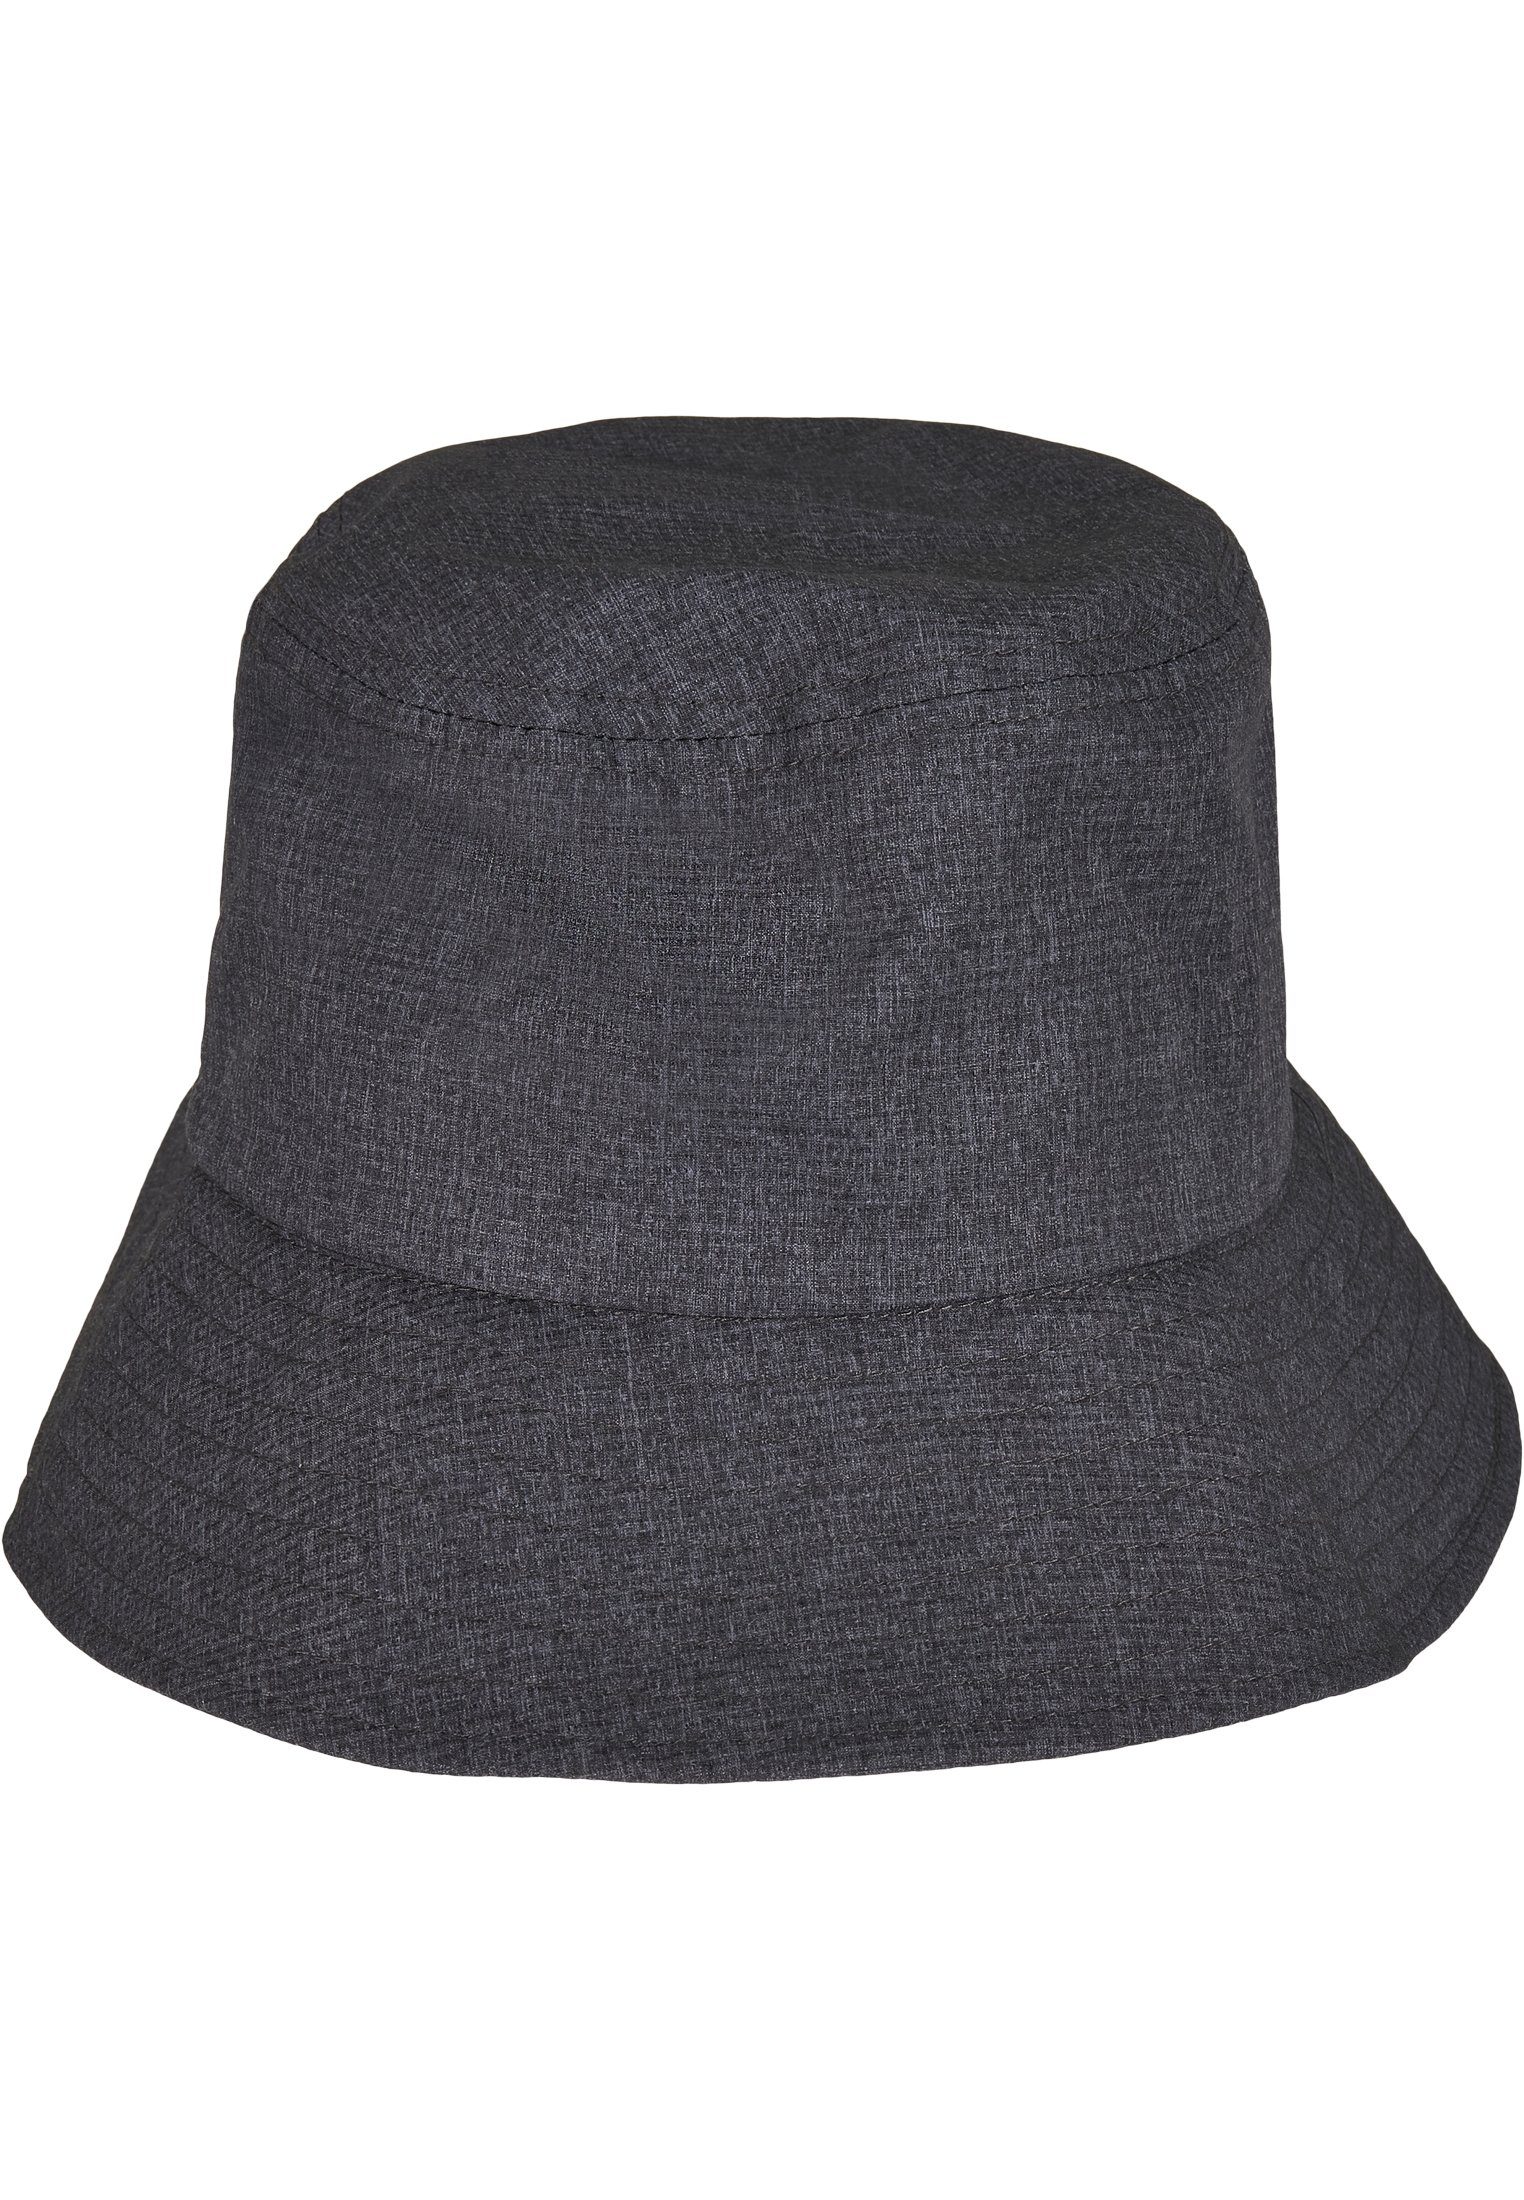 Flexfit Flex Cap Bucket Hat Bucket Hat Flexfit Adjustable heathergrey